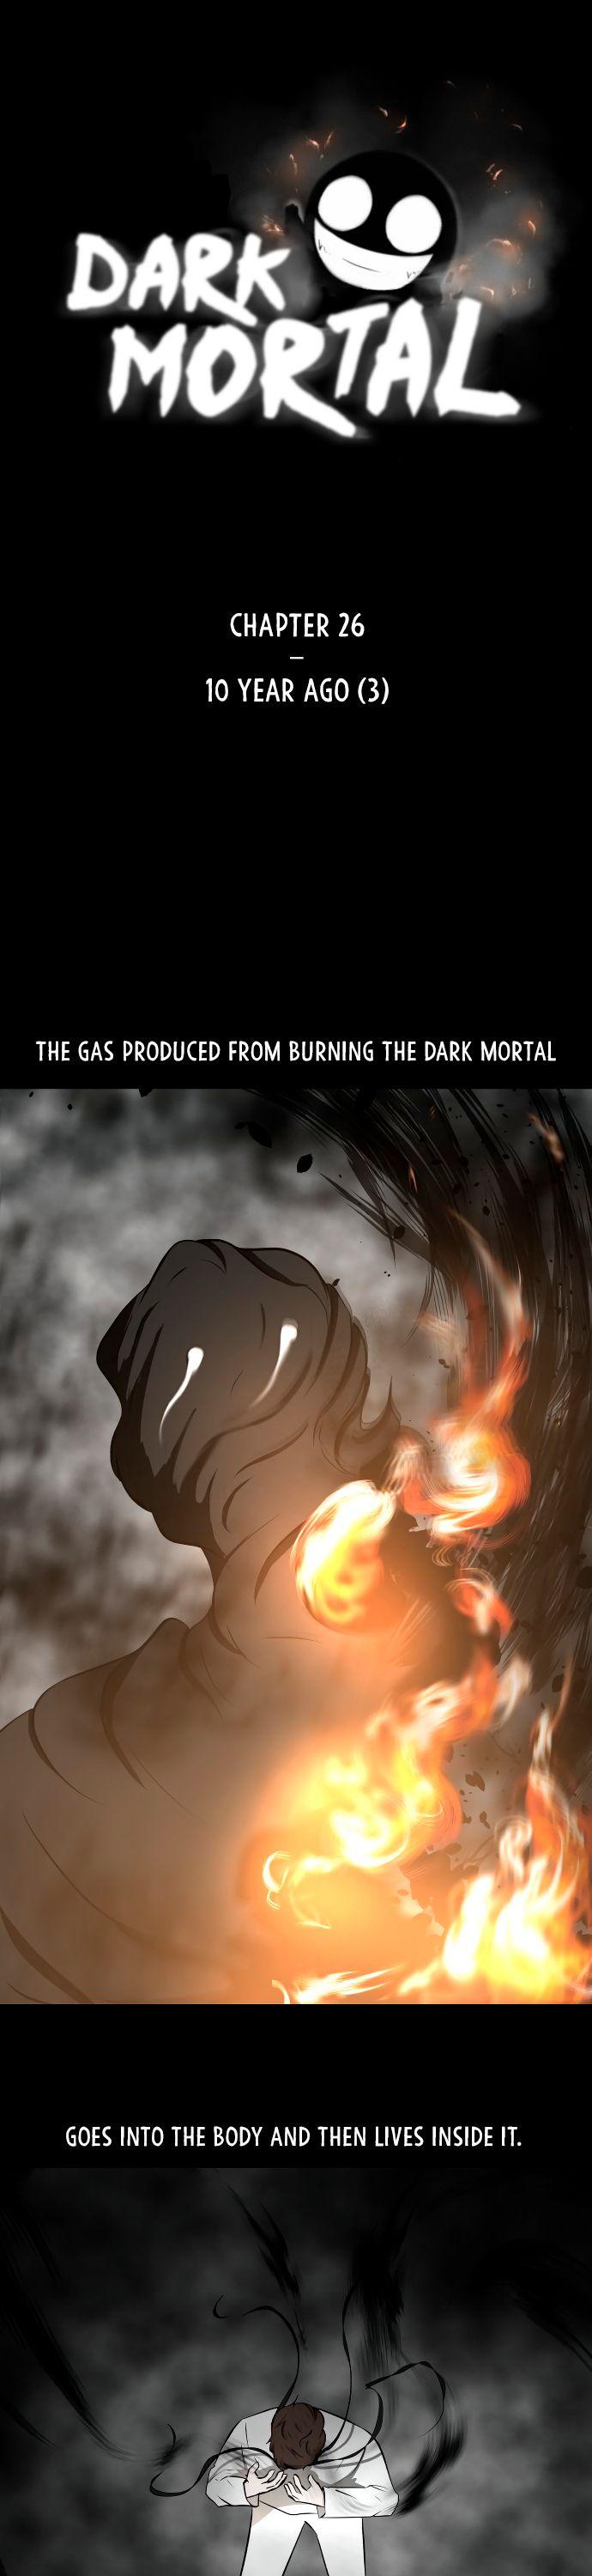 Dark Mortal - Page 2